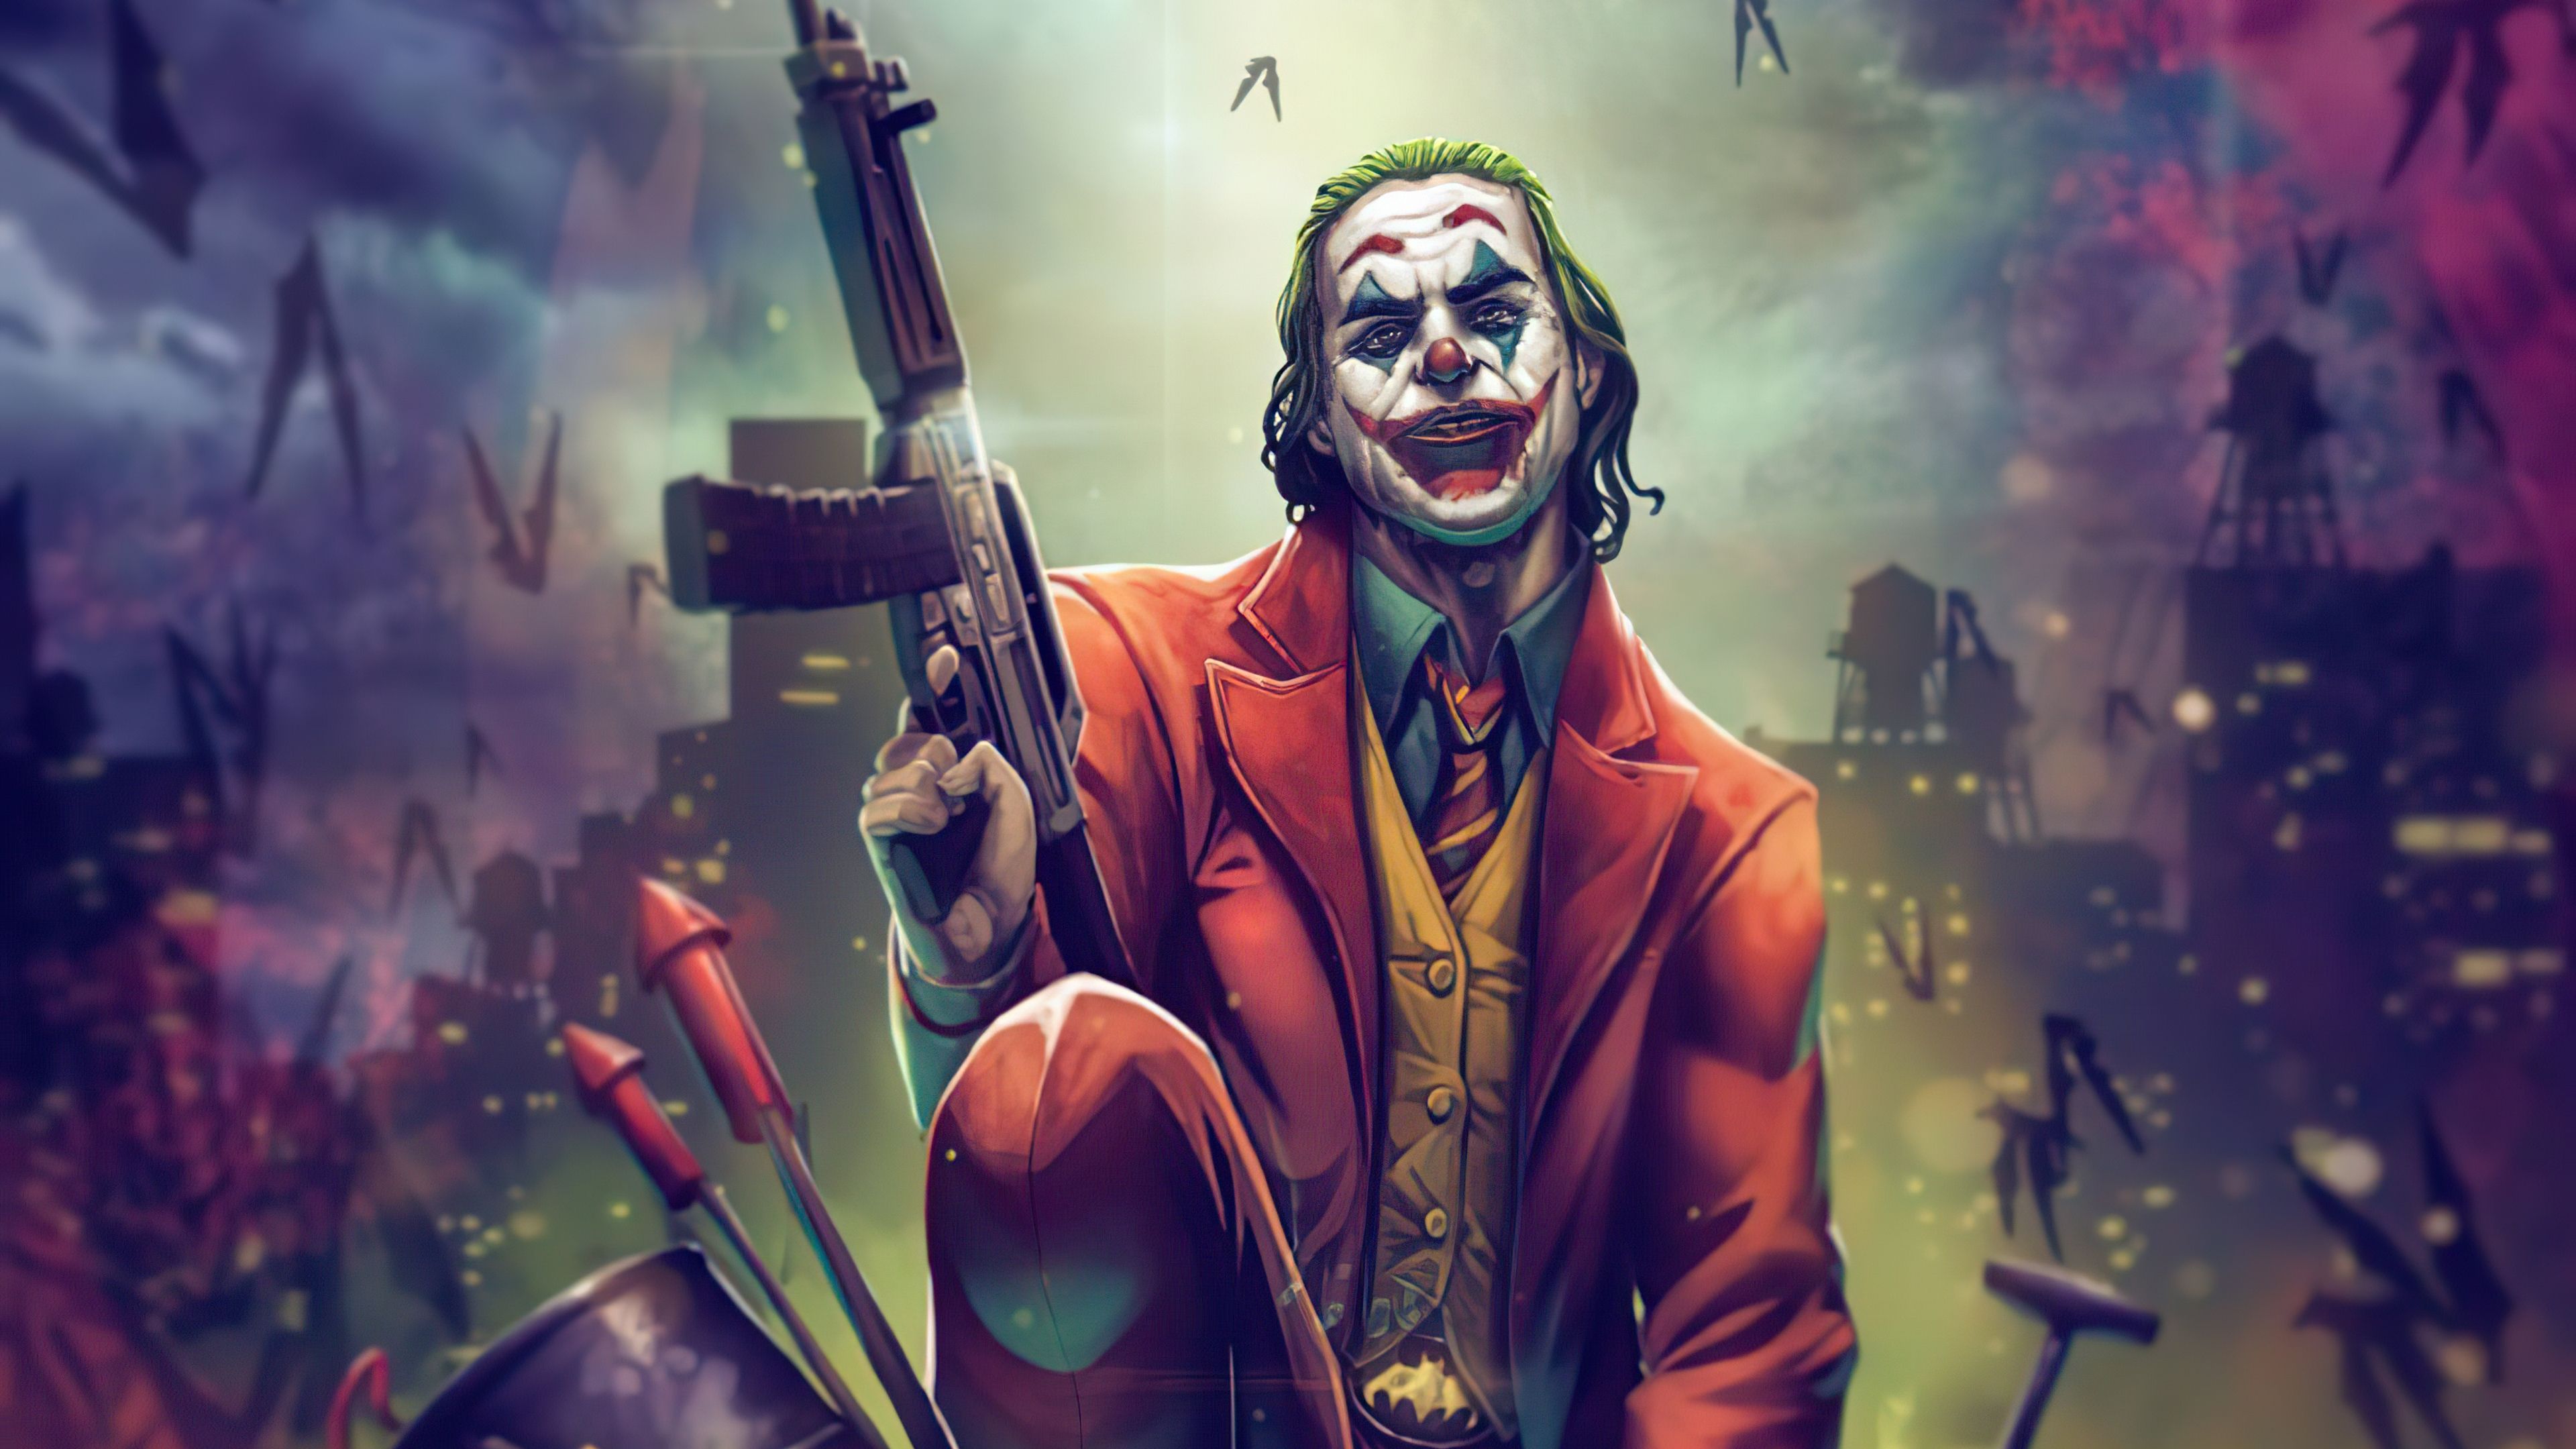 Joker With Gun Up 4k Wallpaper Title Joker With Wallpaper With Gun HD Wallpaper